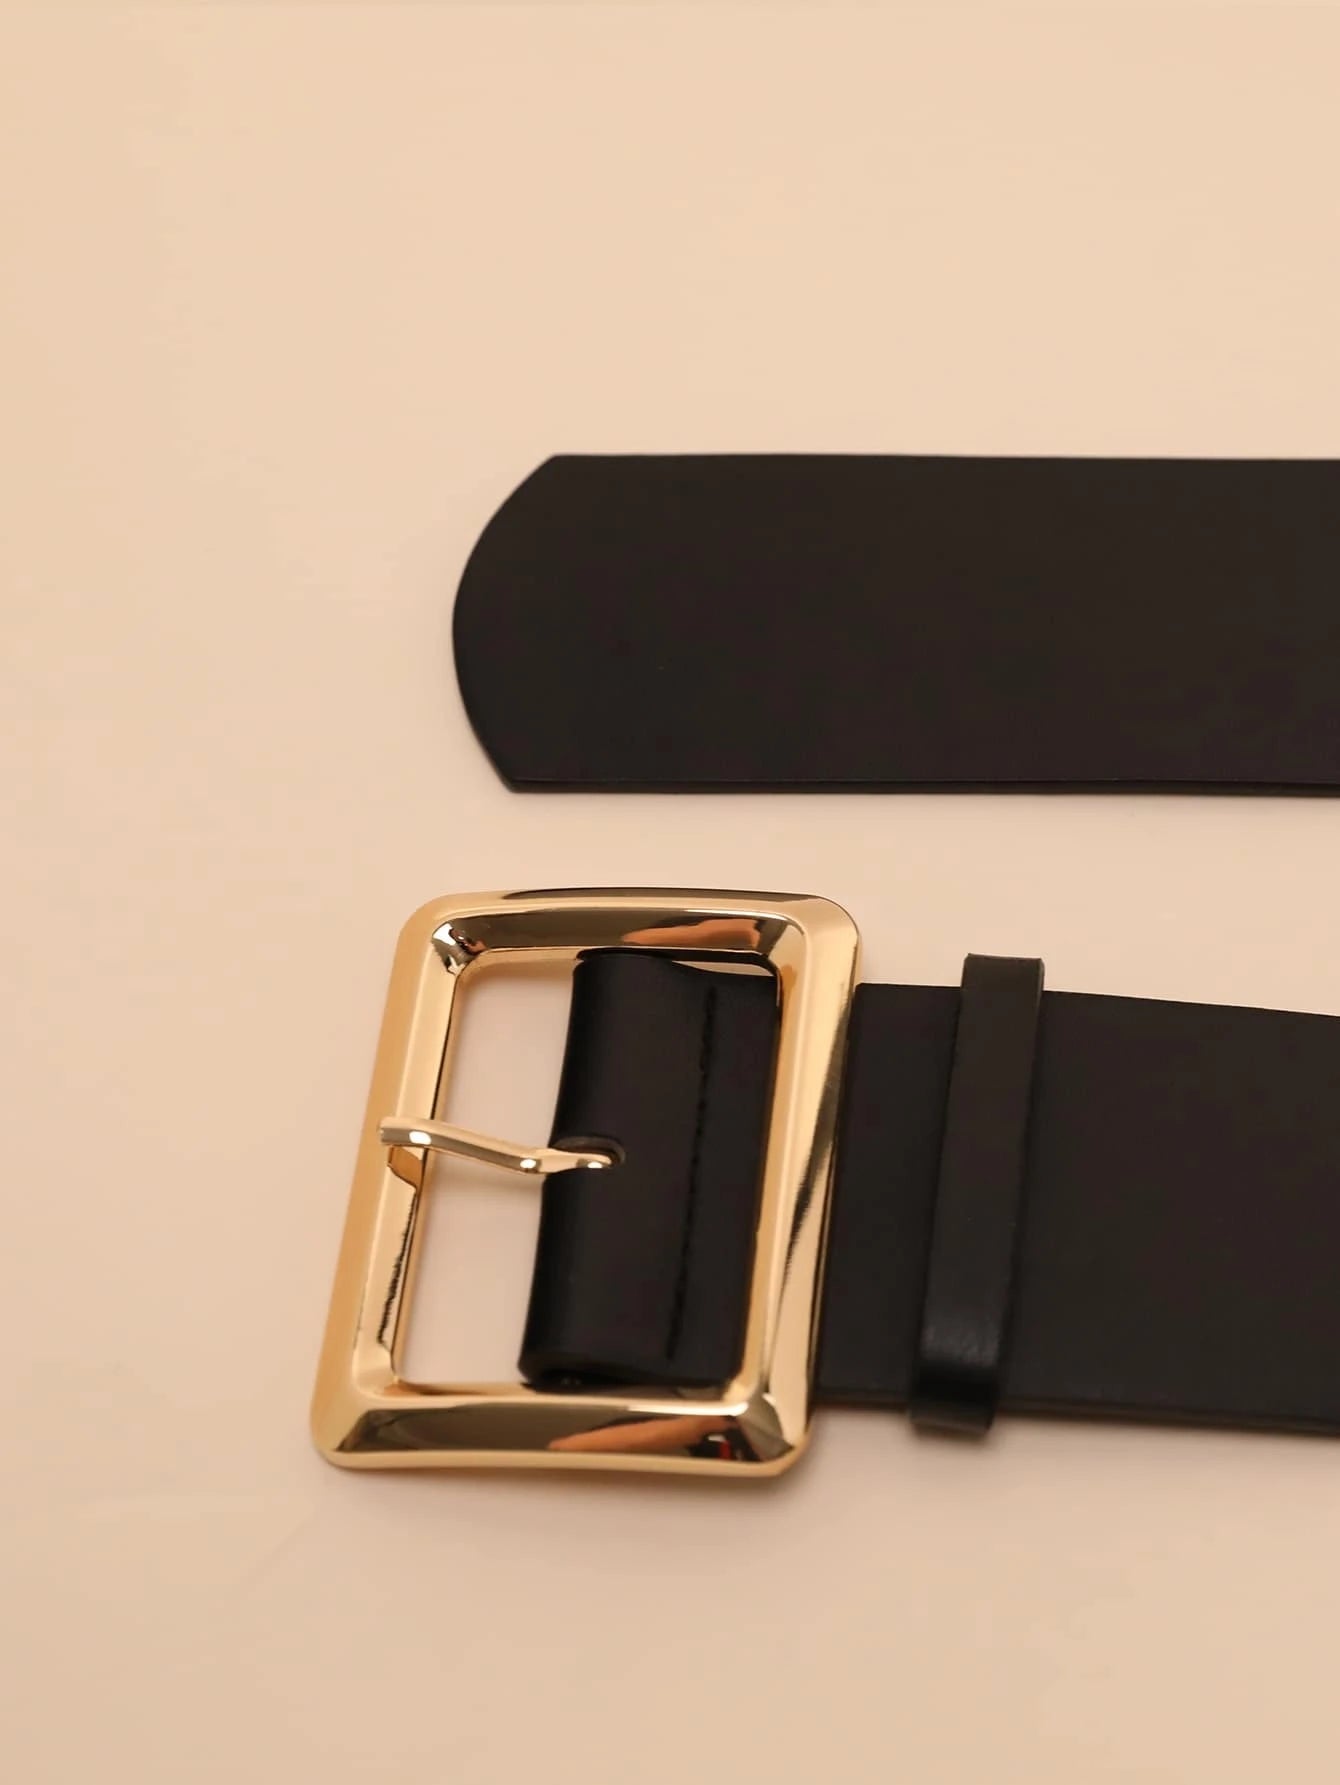 Cinturón Unisex de Cuero Negro con Hebilla Cuadrada Dorada Estilo Elegante - Roxanz